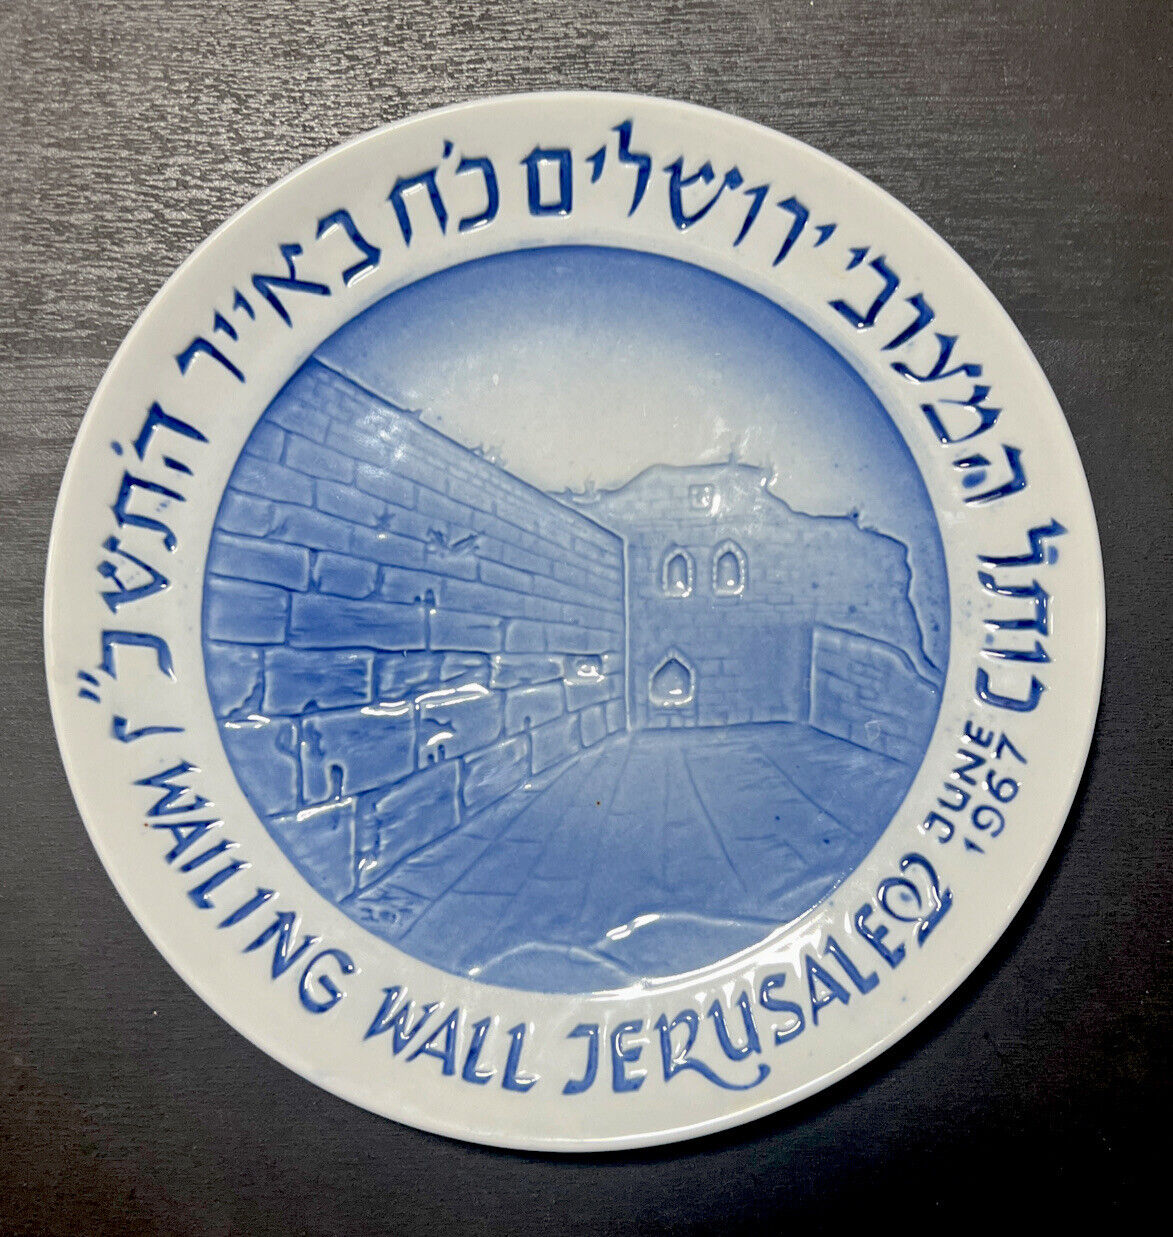 Naaman Israel Wailing Wall Jerusalem - June 1967 Blue Porcelain Plate (Vintage)